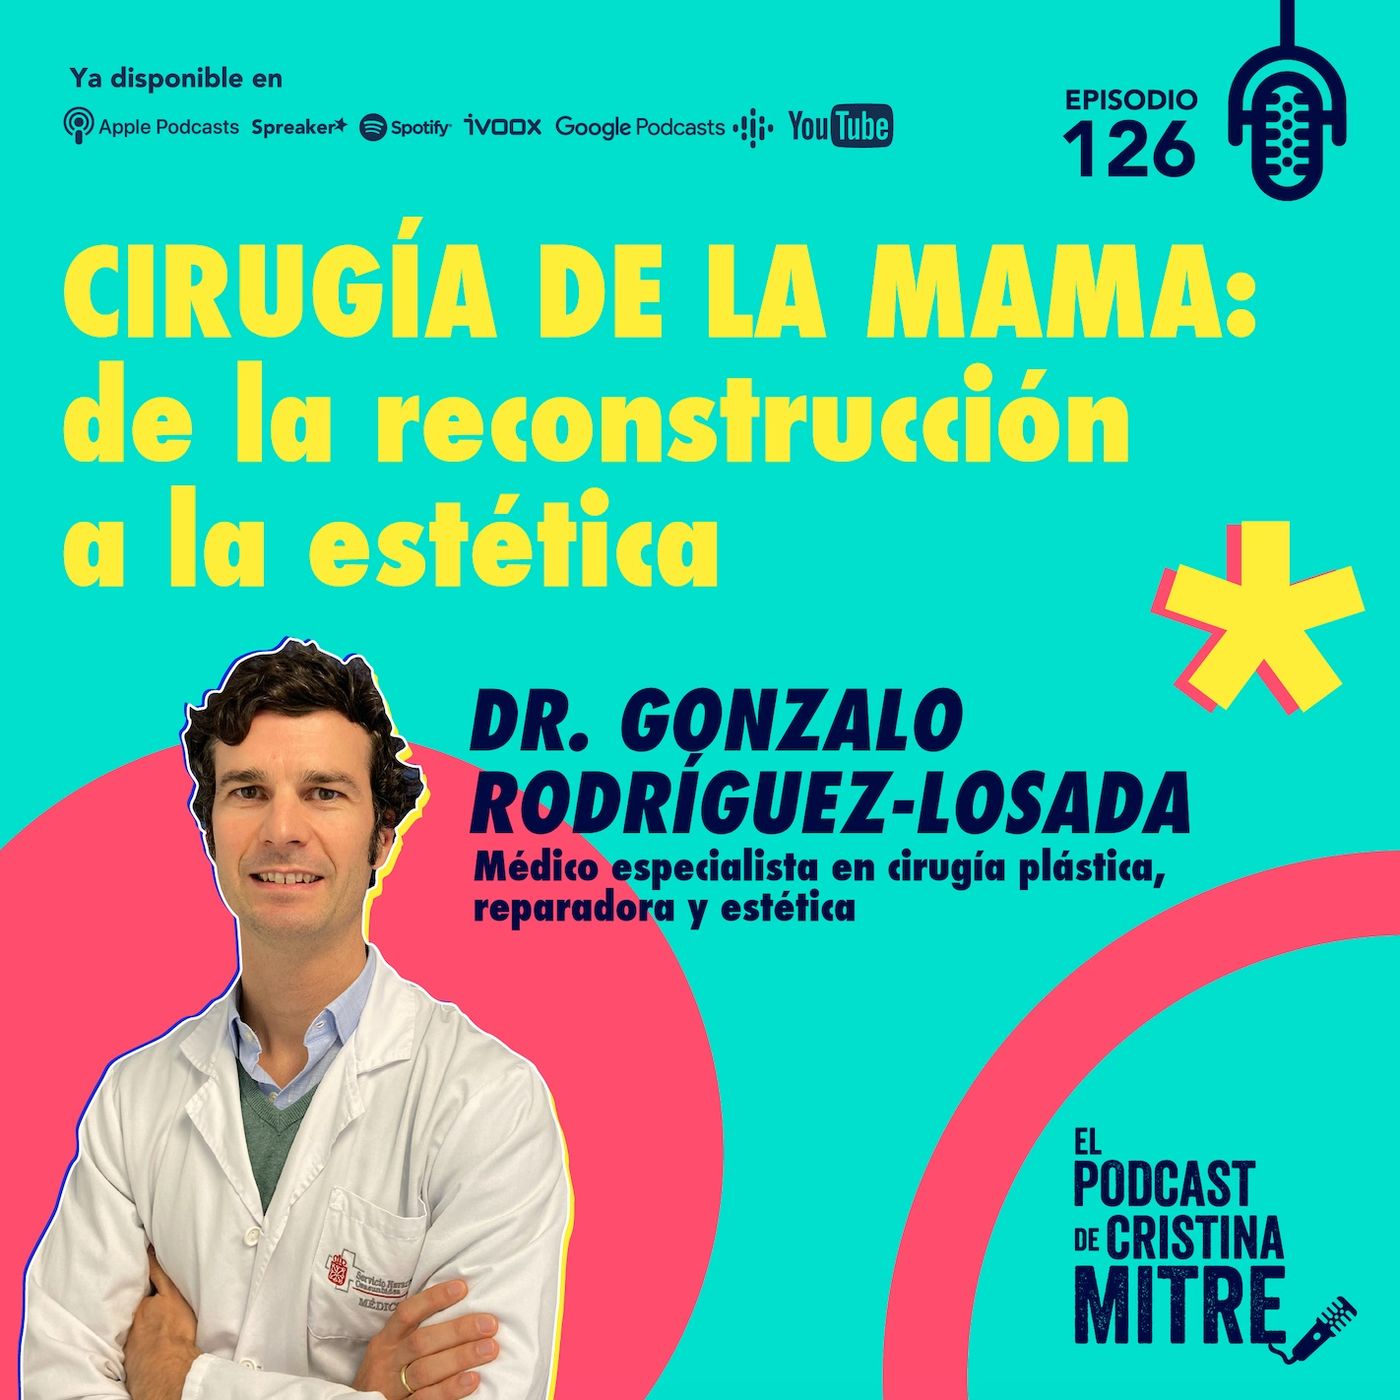 Cirugía de la mama: de la reconstrucción a la estética, con el Dr. Gonzalo Rodríguez-Losada. Episodio  126